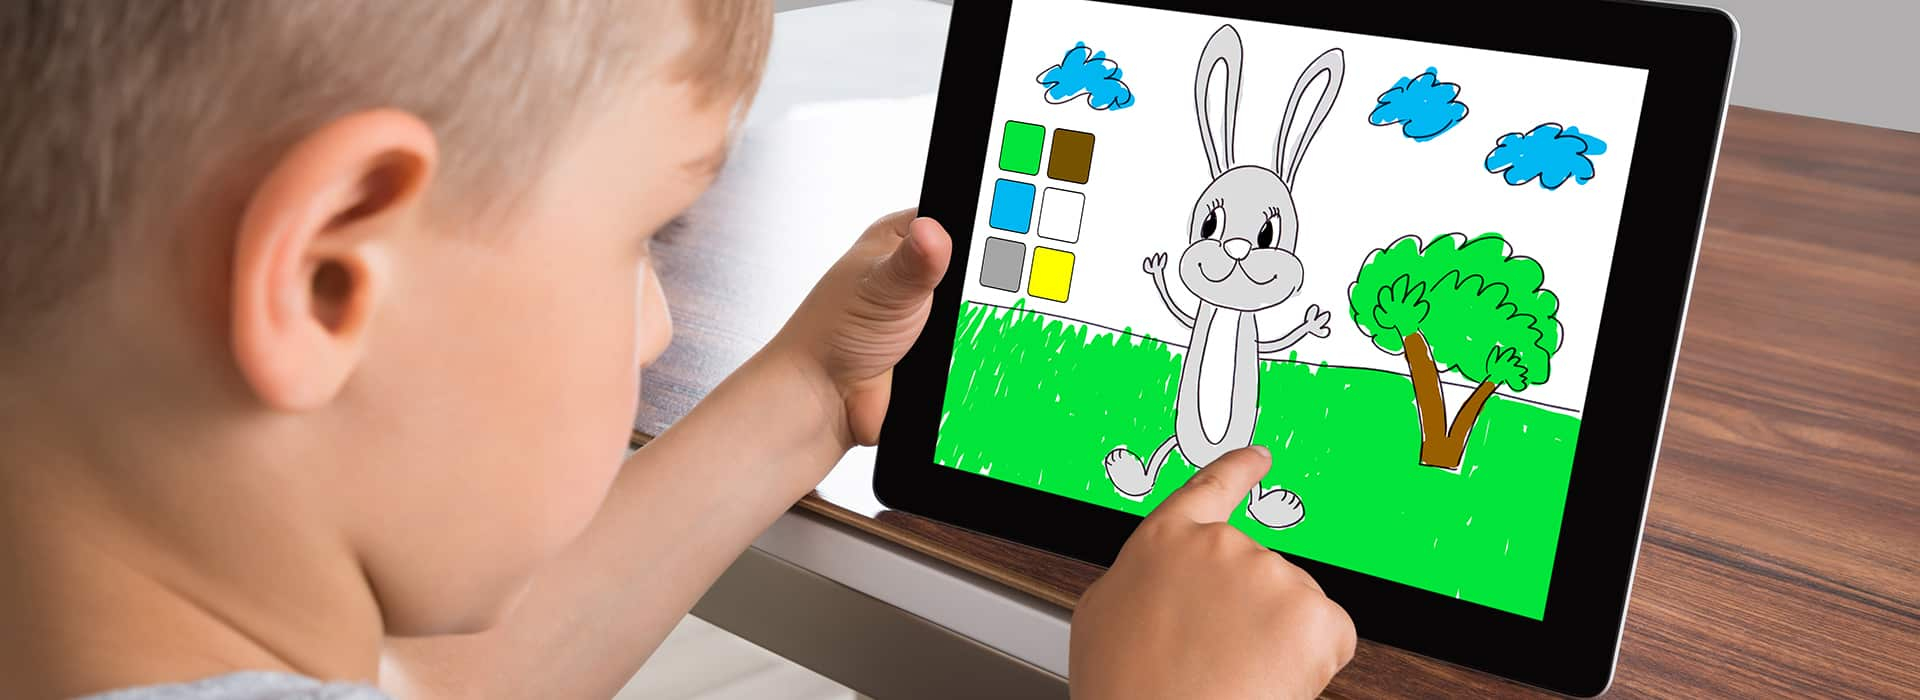 Tablette Enfant : Voici Les Meilleurs Modèles À Offrir En 2020 encequiconcerne Tablette Jeux 4 Ans